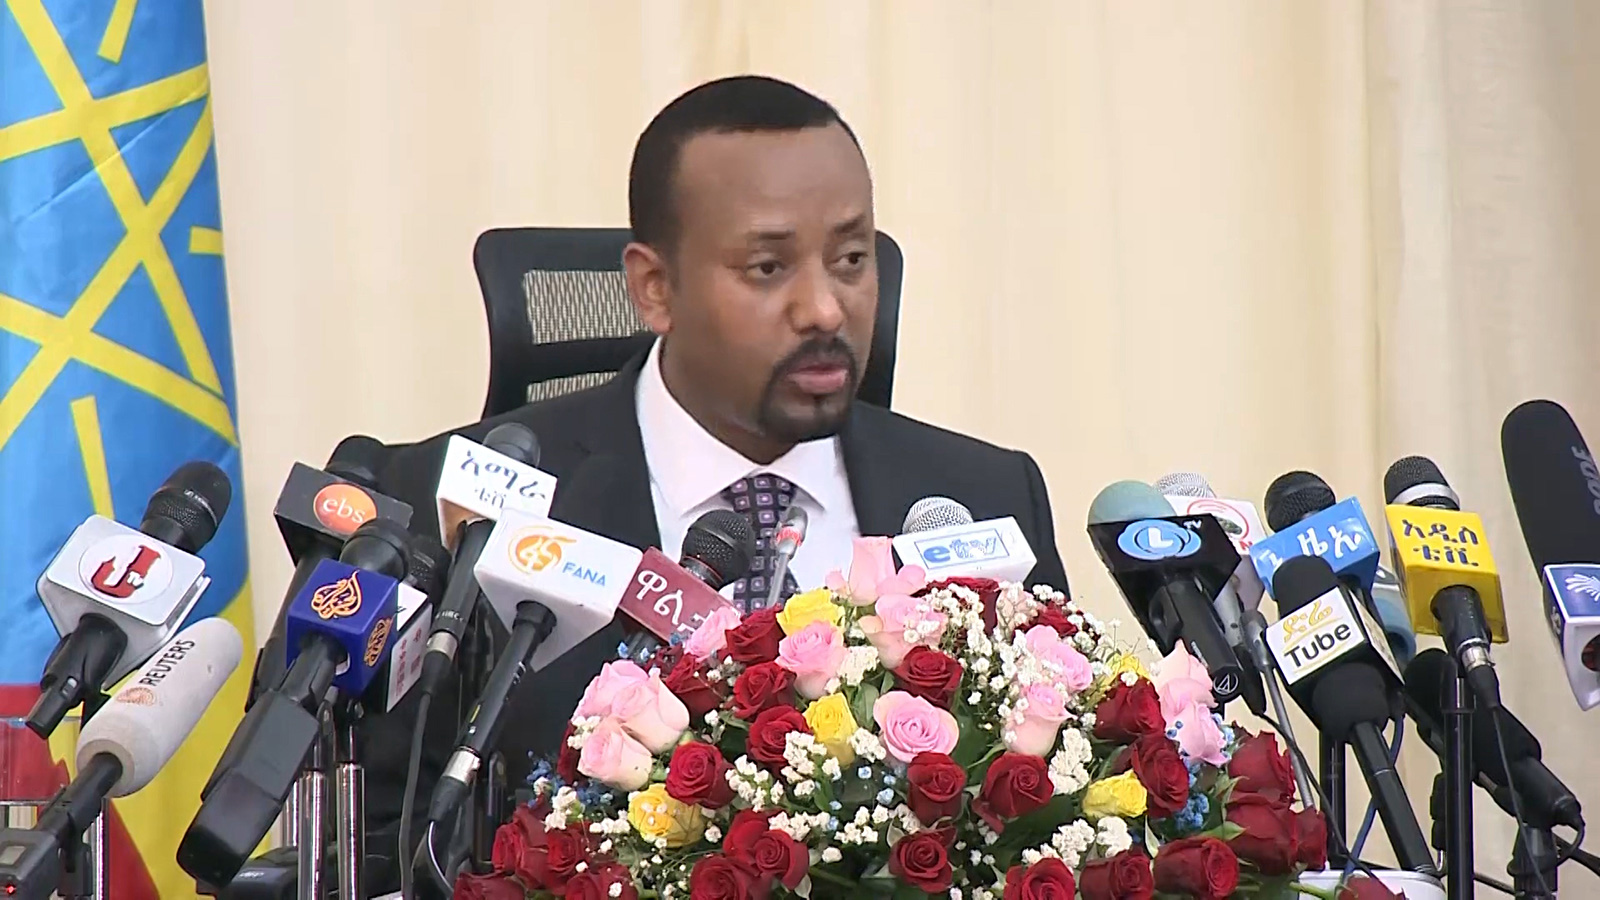 يبقى الوضع في أثيوبيا قابل لكل الاحتمالات ولكن لن يستمر الوضع على ما هو عليه الآن وإذا واصل رئيس الوزراء على هذا المنوال في سياسته الداخلية سيواجه صعوبات كبيرة في المستقبل